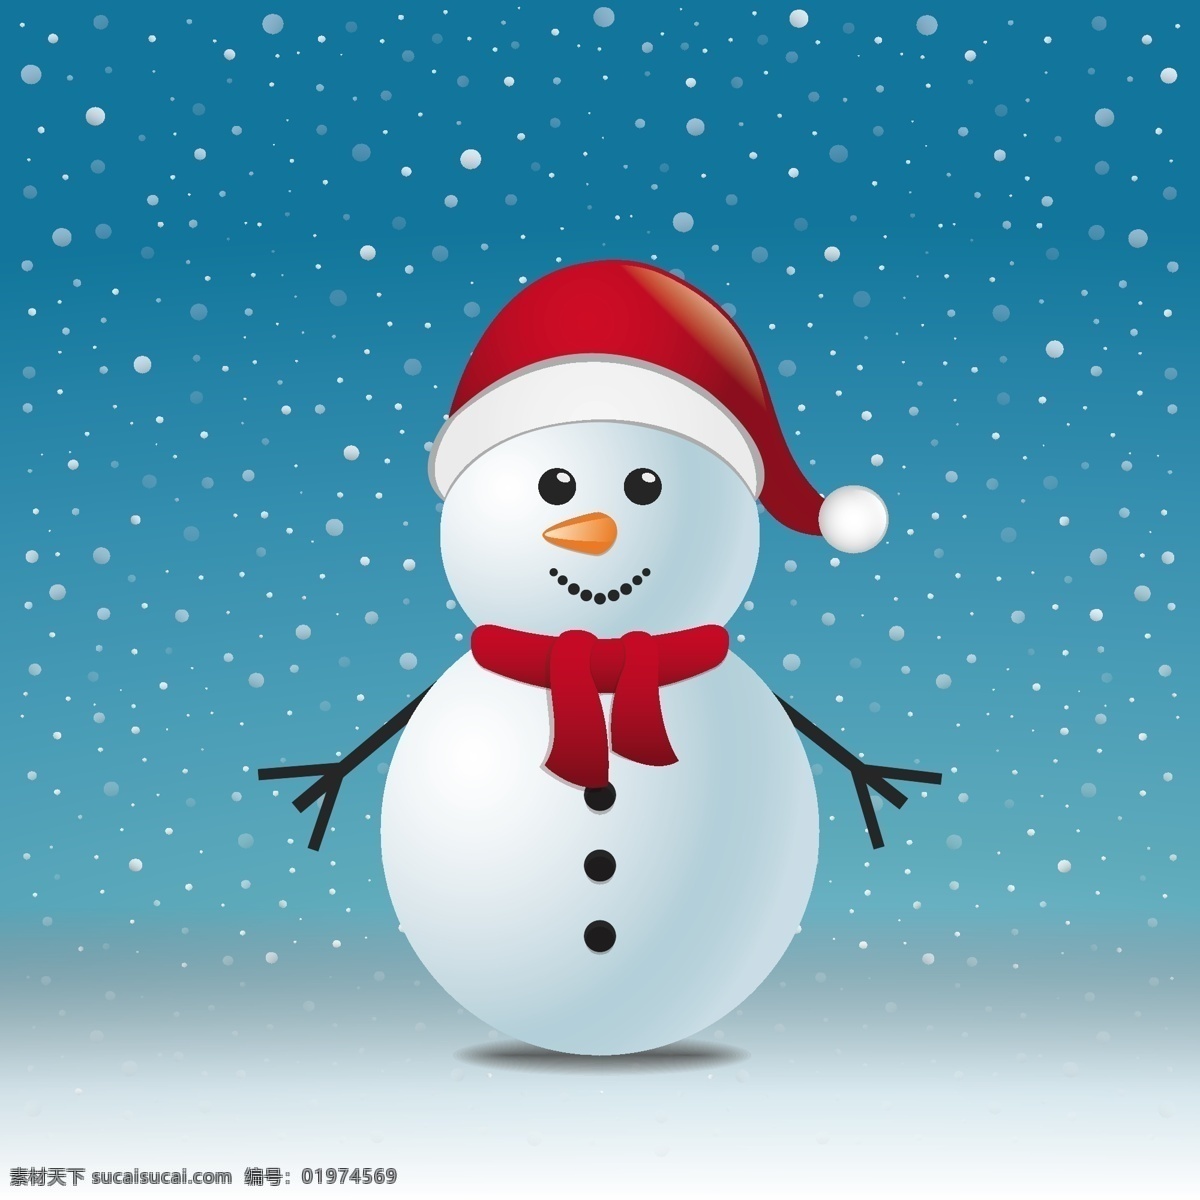 圣诞背景设计 背景 圣诞节 家庭 新的一年里 雪 圣诞快乐 冬天 圣诞节背景 壁纸 新的雪人 装饰 丰富多彩 年 文化 冷